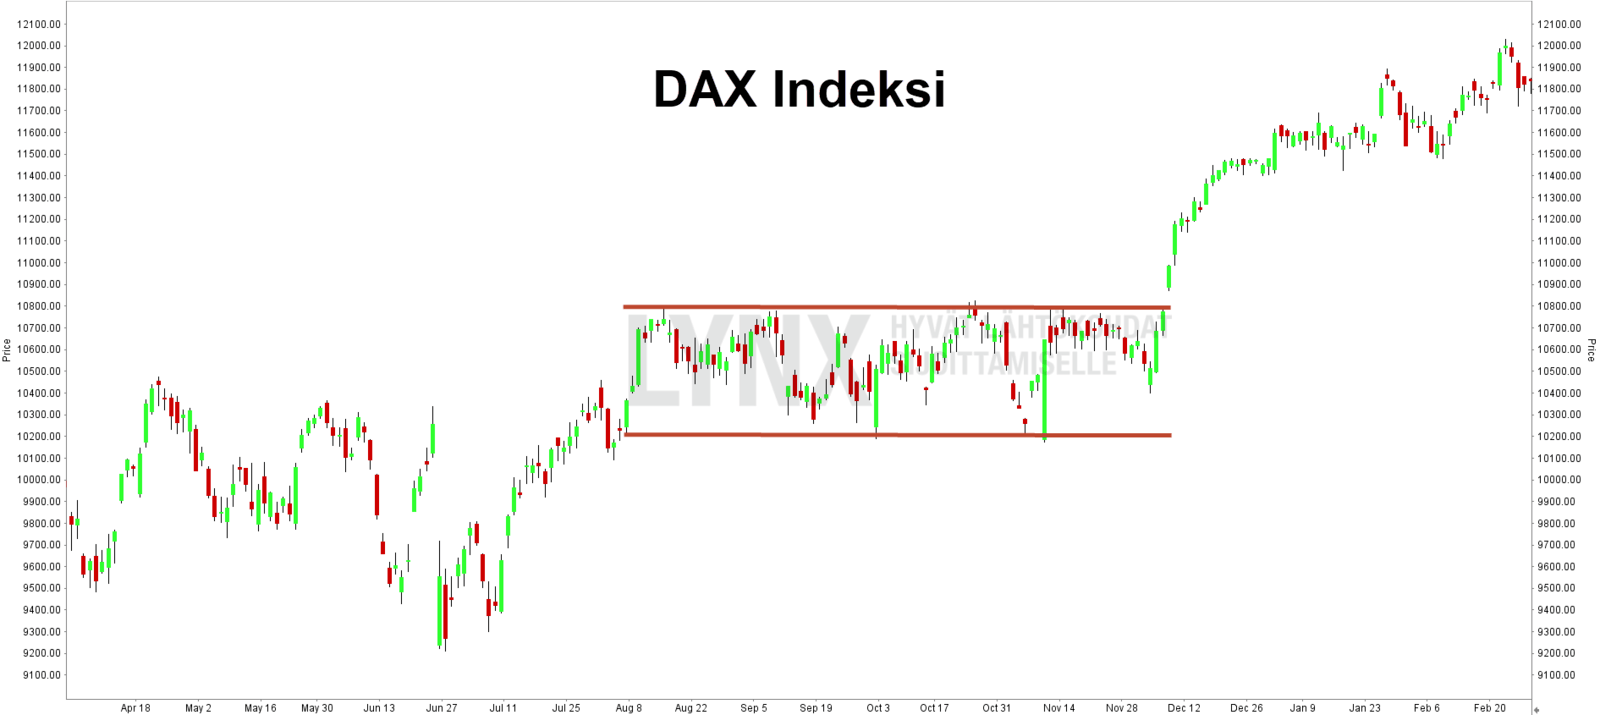 Tekninen analyysi DAX indeksi fish markkina